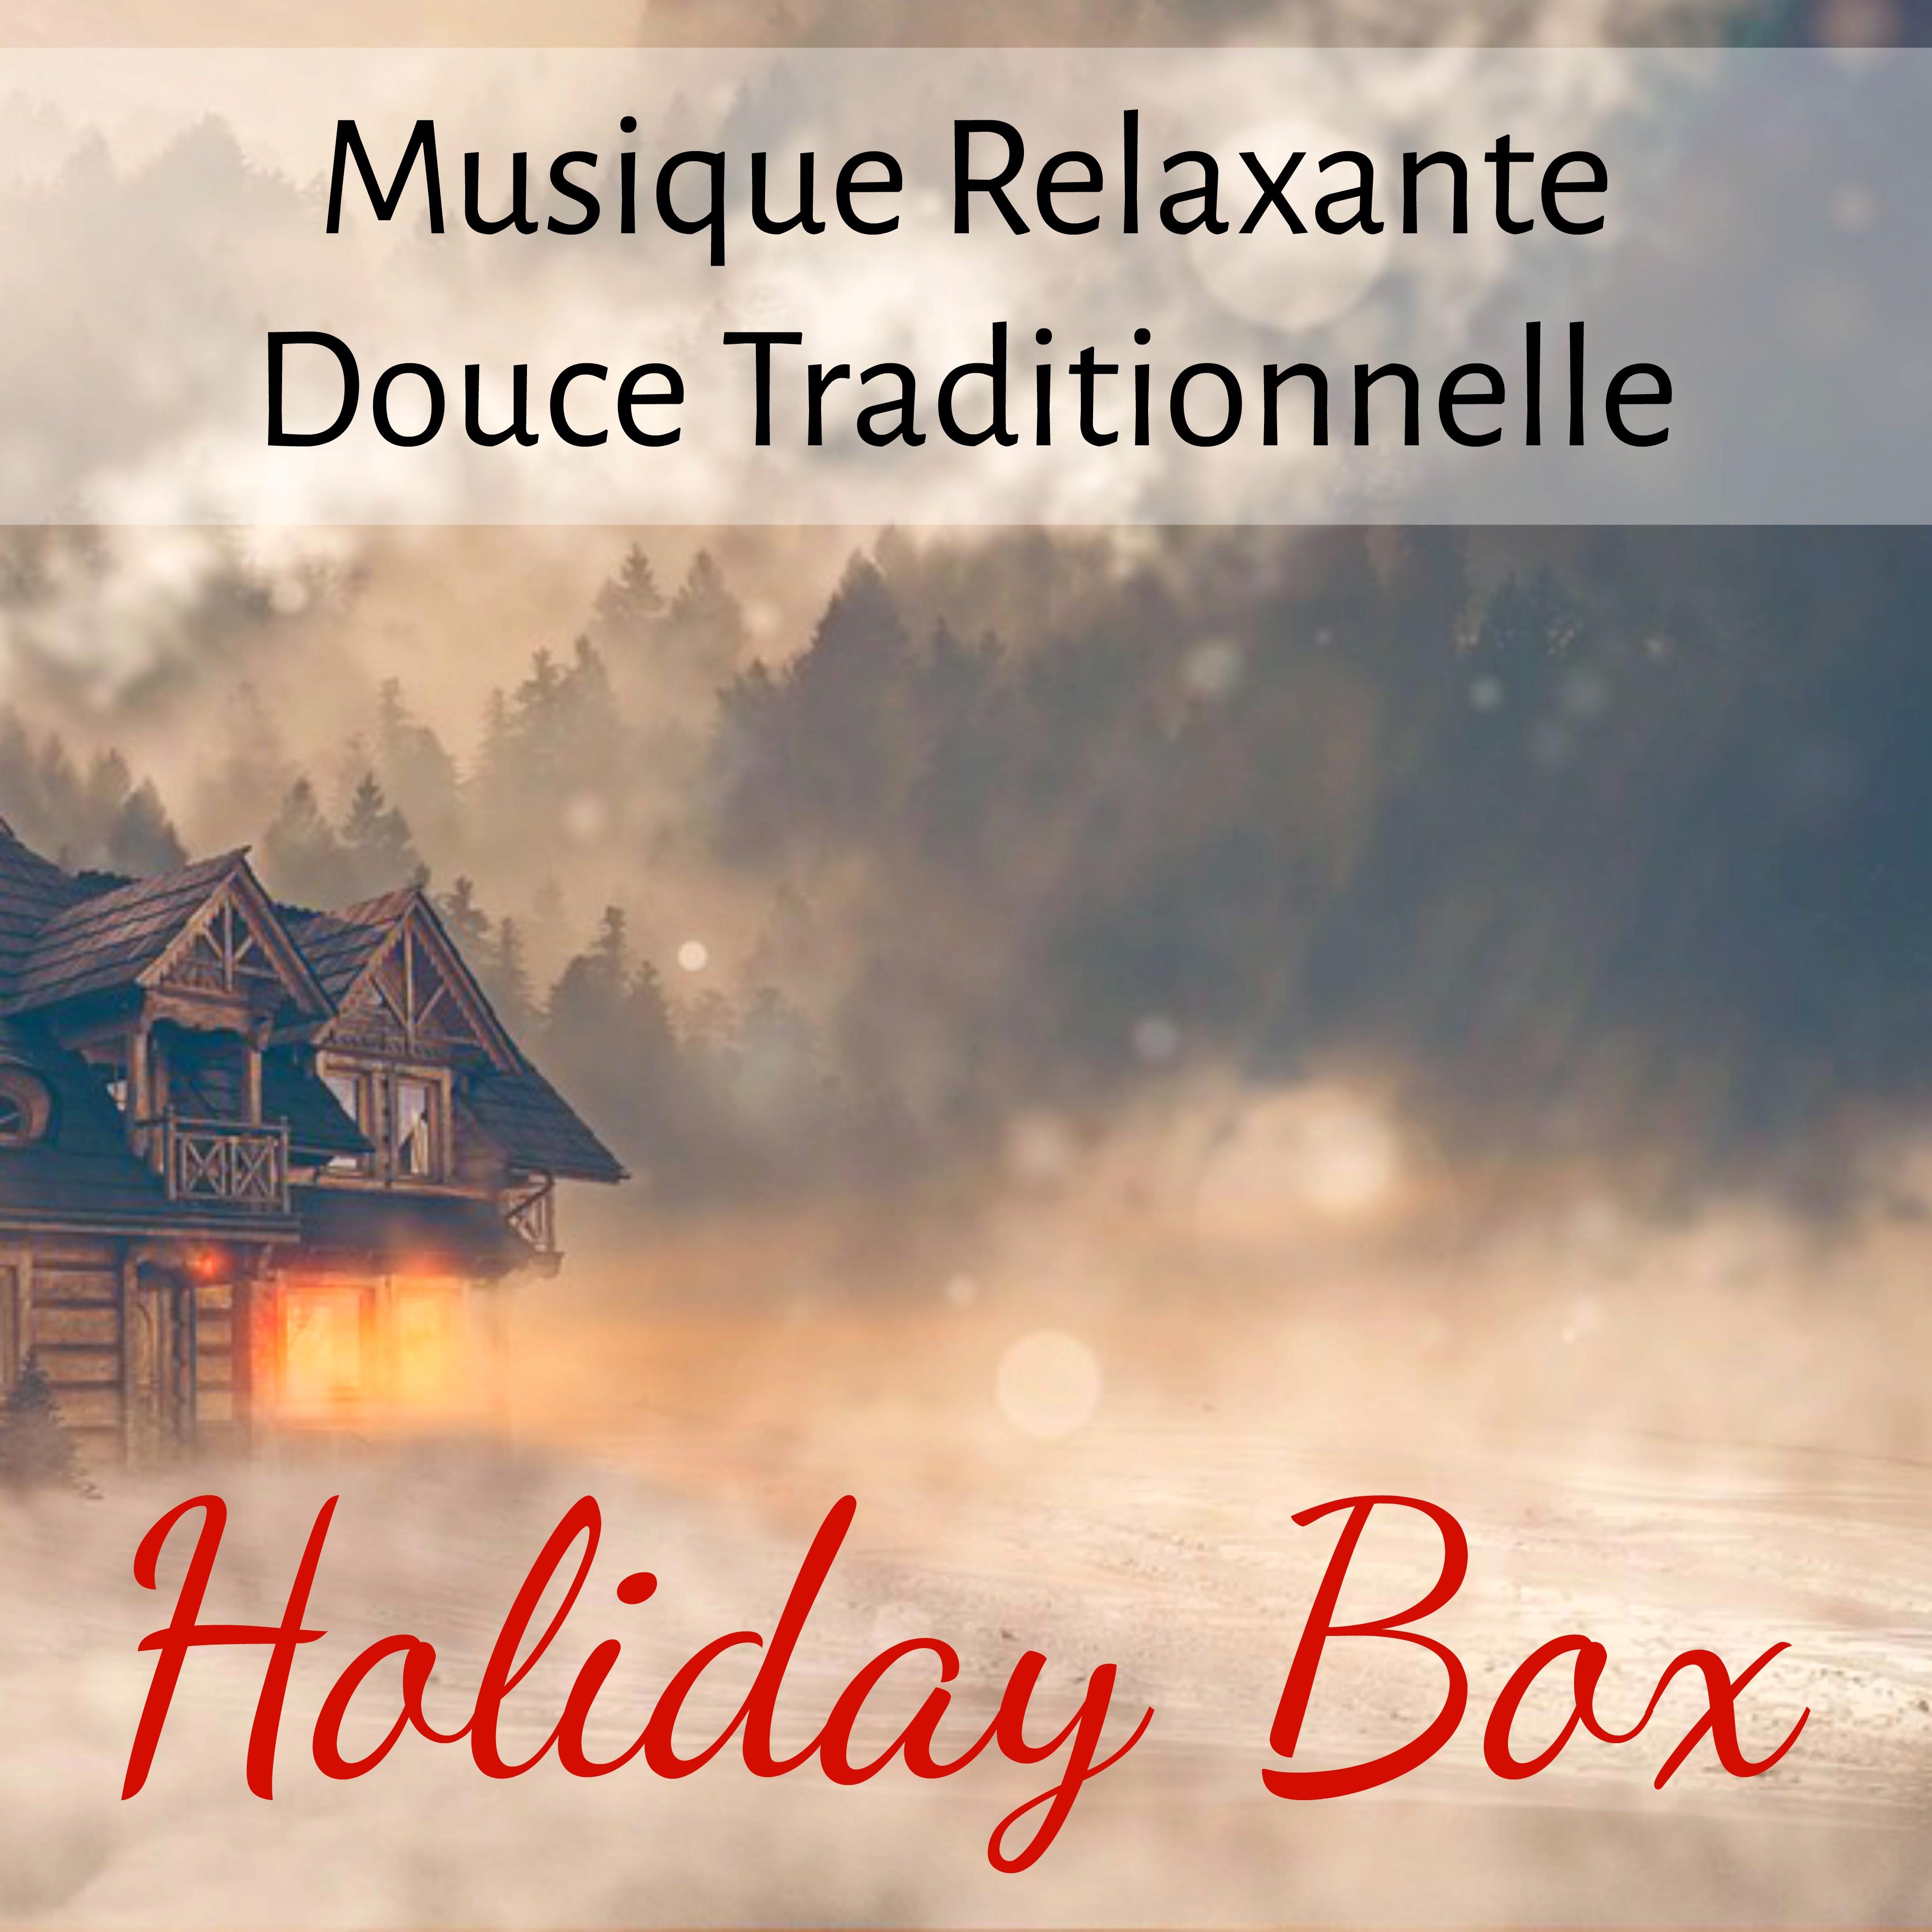 Holiday Box - Musique Relaxante Douce Traditionnelle pour Bonne Année Vacances de Noël avec Sons de la Nature Instrumentaux Binauraux